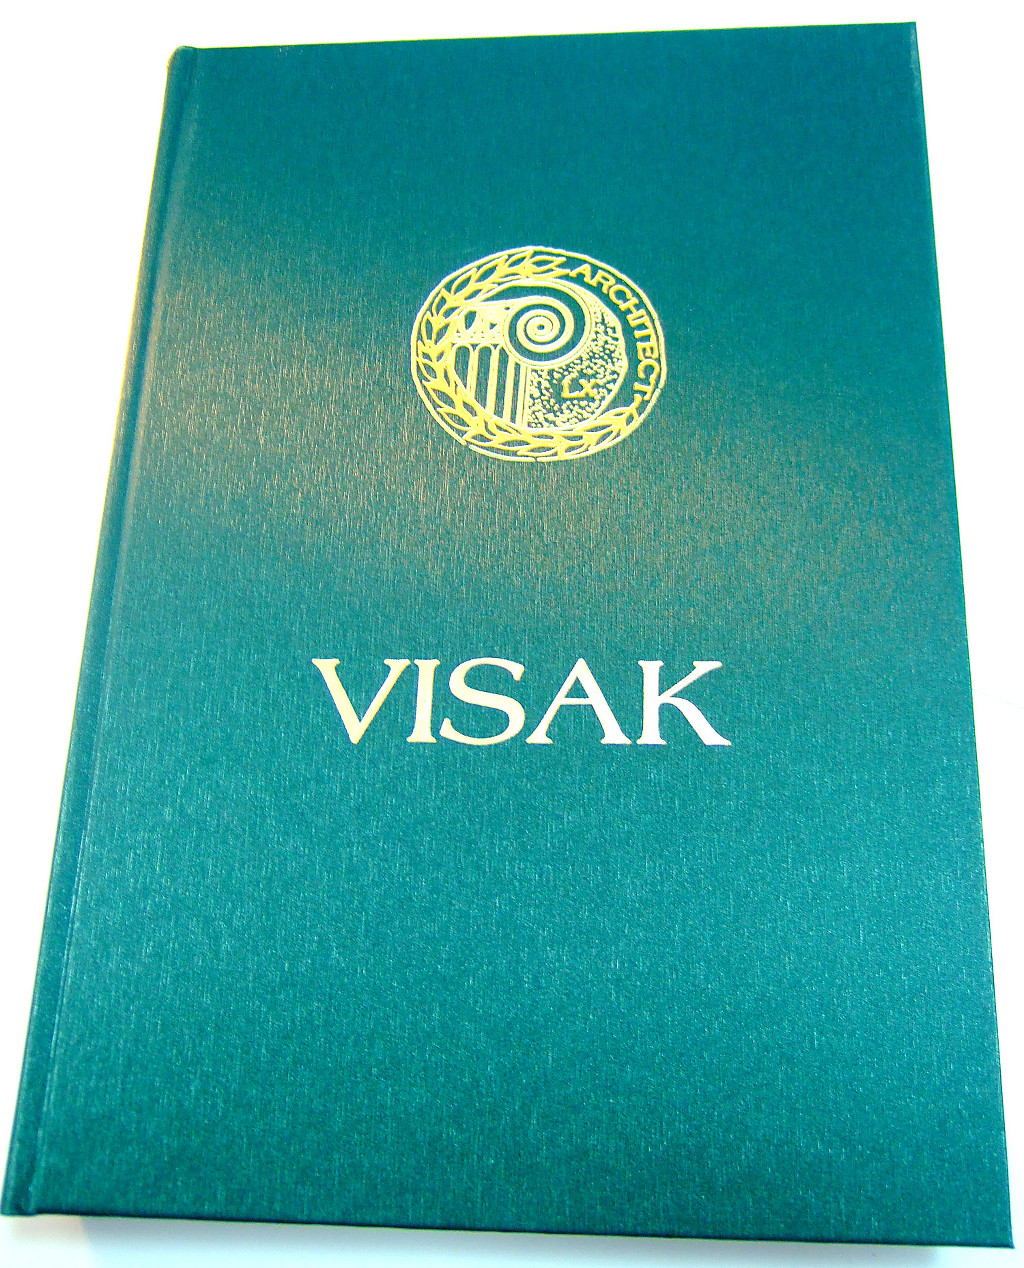 Друк книг «Архитектор Валентин Исак (VISAK)». Поліграфія друкарні Макрос, виготовлення книг, специфікація 965991-1